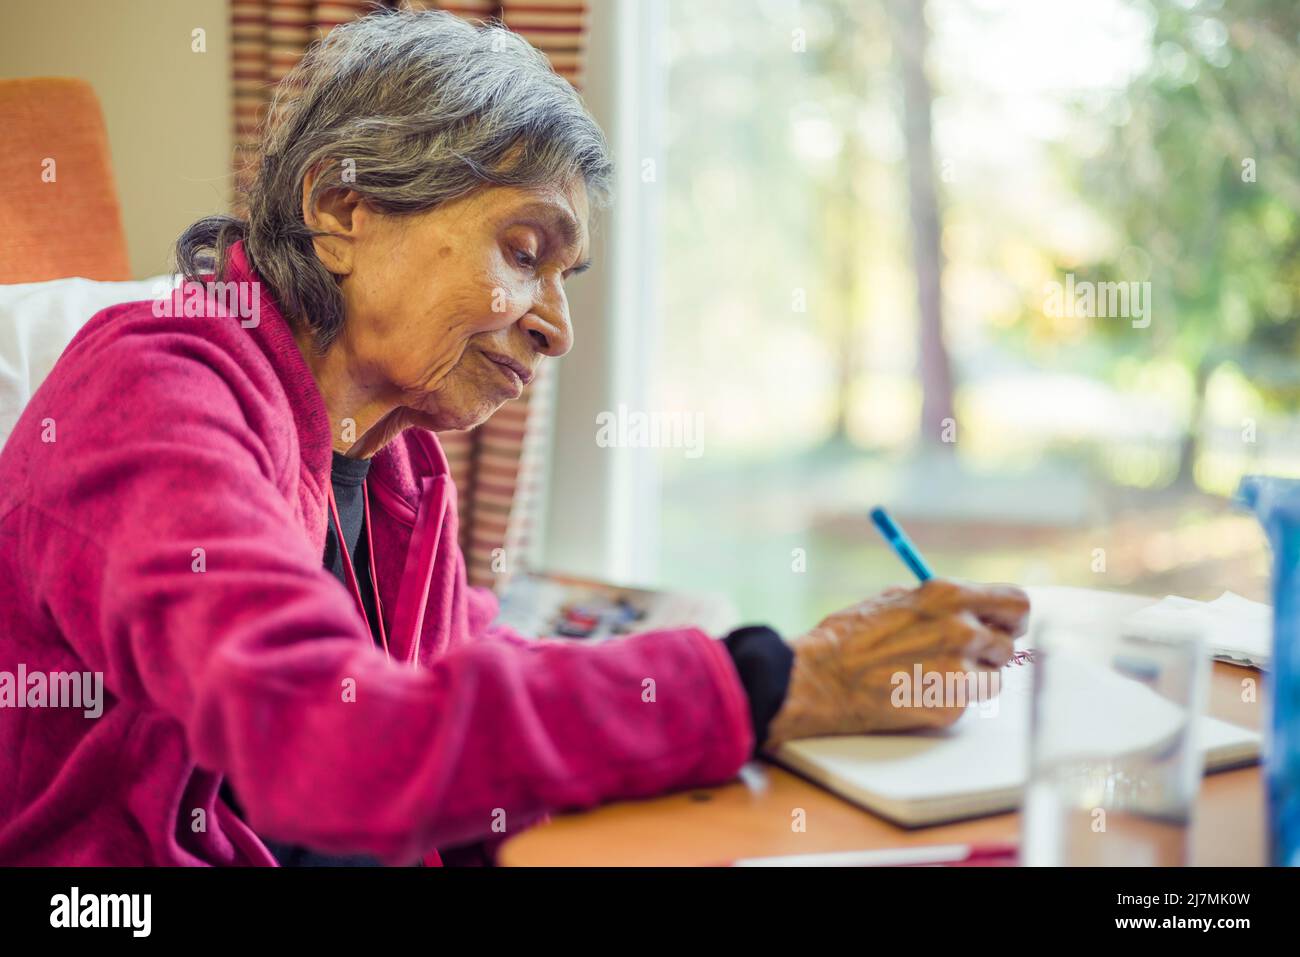 Alte ältere asiatische indische Frau, die in einem Journal oder Notizbuch sitzt, Großbritannien. Zeigt Speicherverlust und das Aufbewahren einer Liste oder eines Tagebuchs. Stockfoto